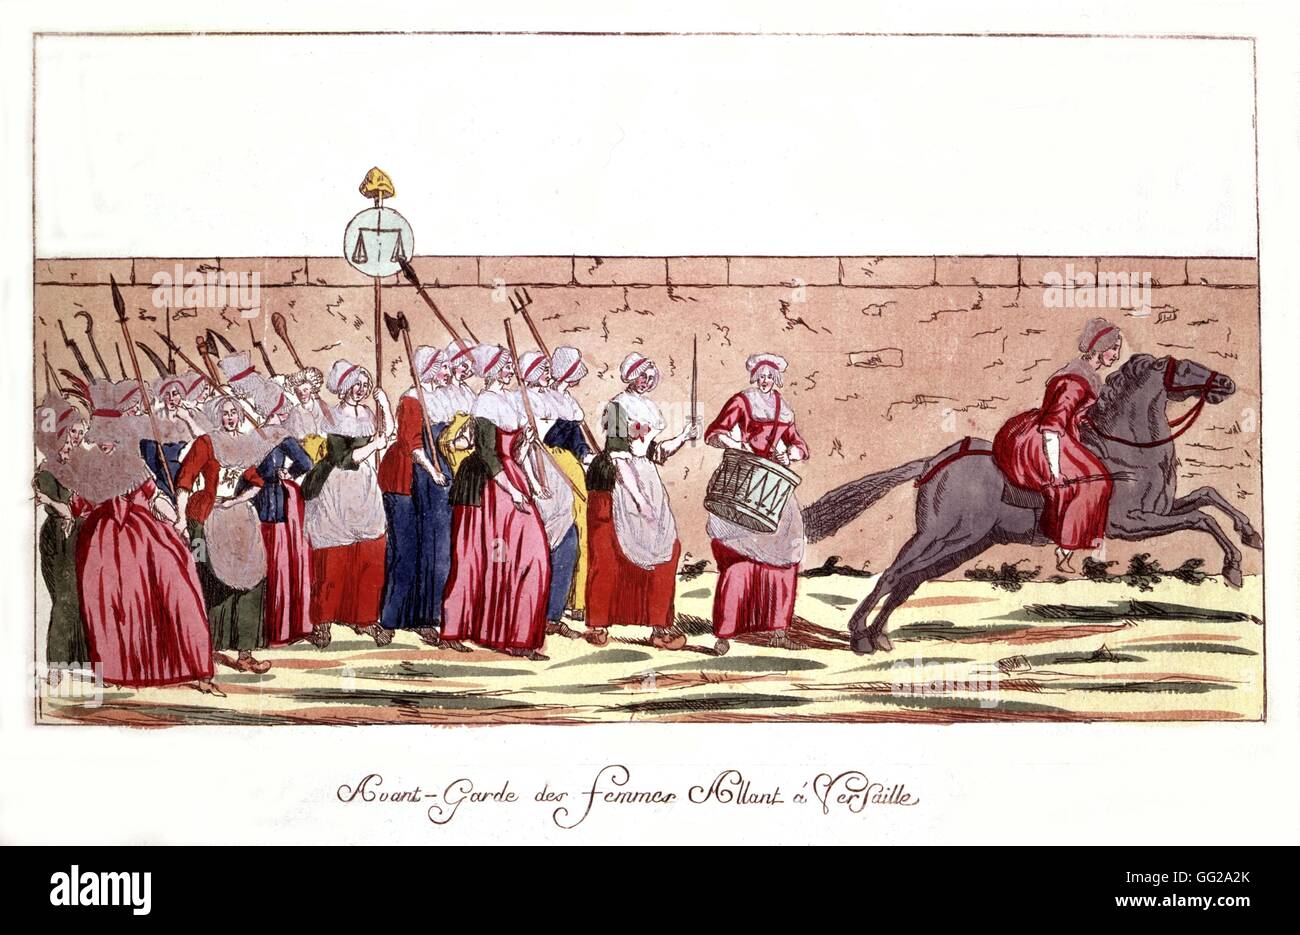 Avant-garde de femmes à la tête de Versailles, le 5 octobre 1789, précisément à midi. France, 1789 Révolution Française Banque D'Images